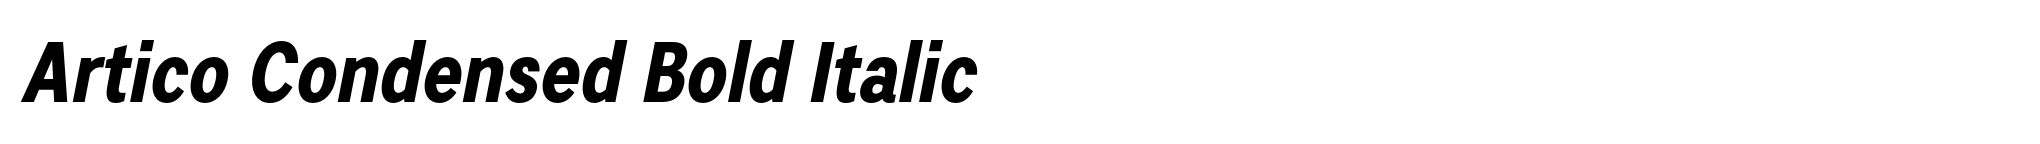 Artico Condensed Bold Italic image